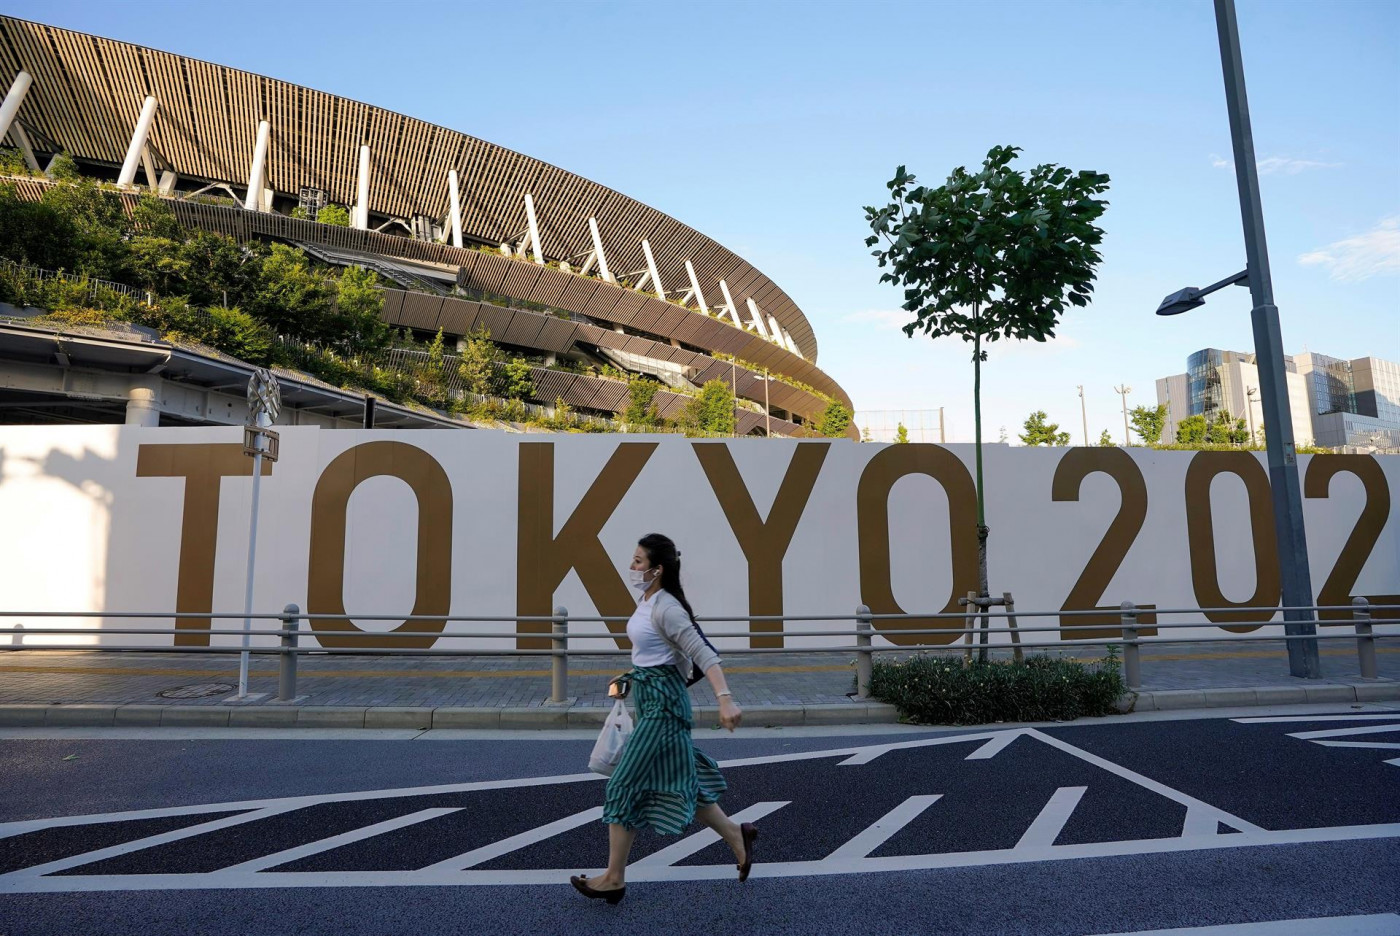 Mulher caminha em frente a banner escrito das Olimpíadas